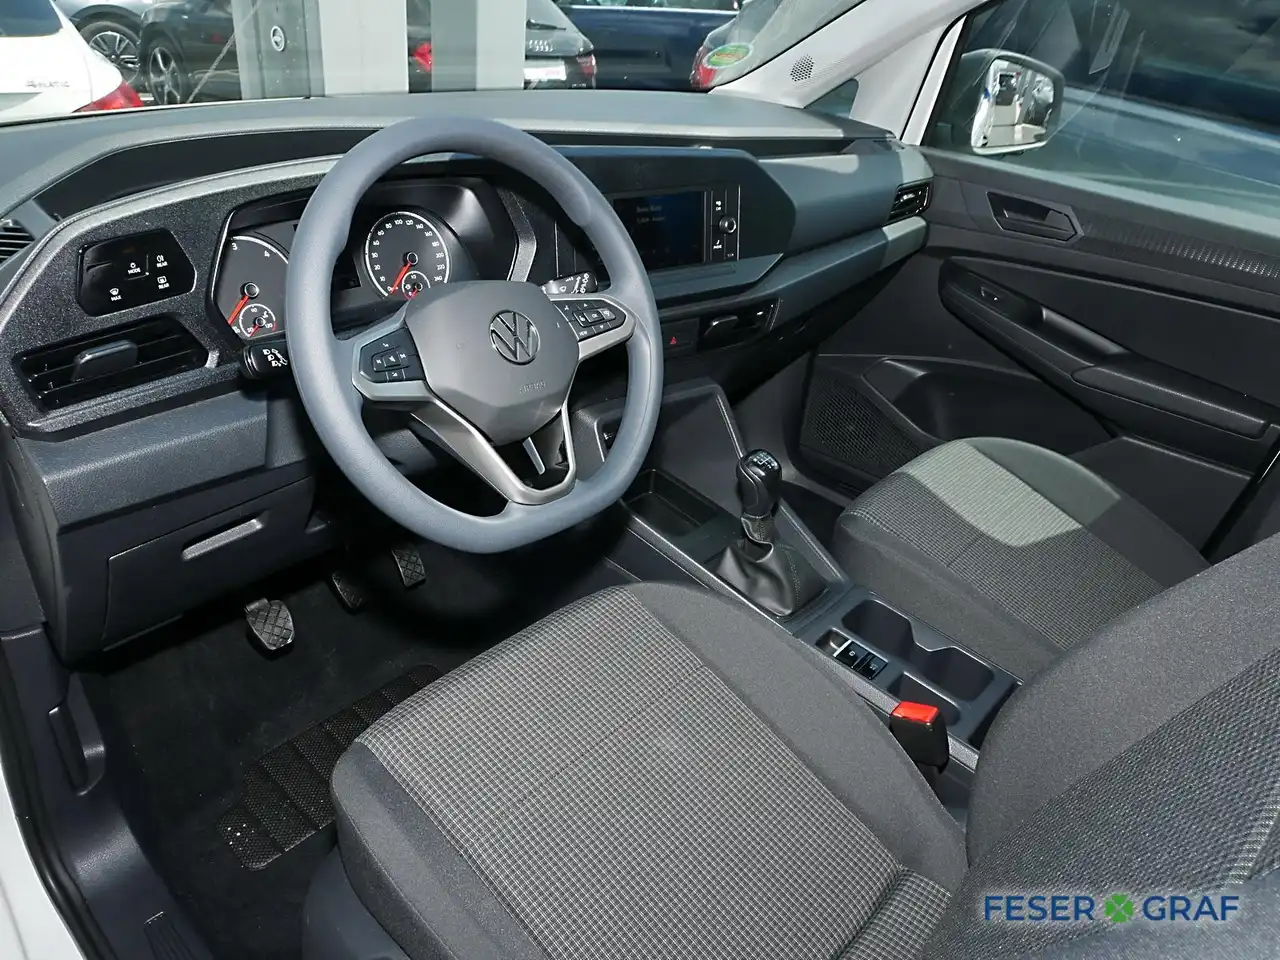 VW CADDY MAXI kaufen 🍀 Feser-Graf Fahrzeugsuche